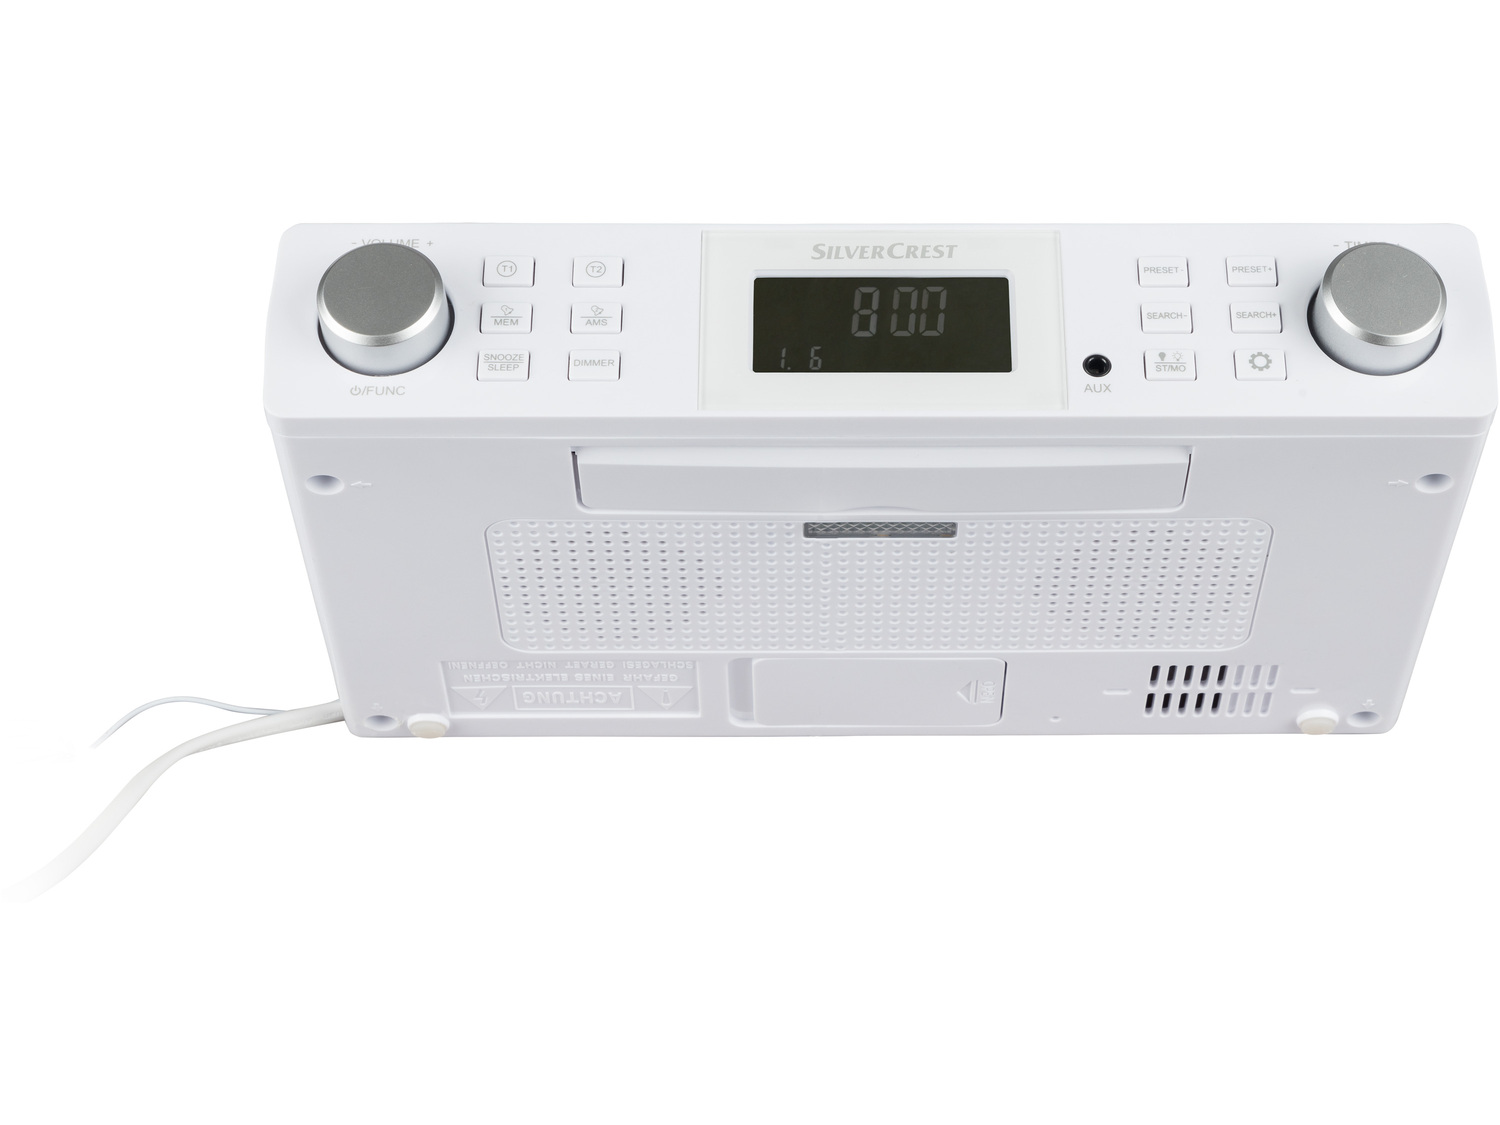 Podszafkowe radio kuchenne Silvercrest, cena 74,90 PLN 
- duży wyświetlacz LCD ...